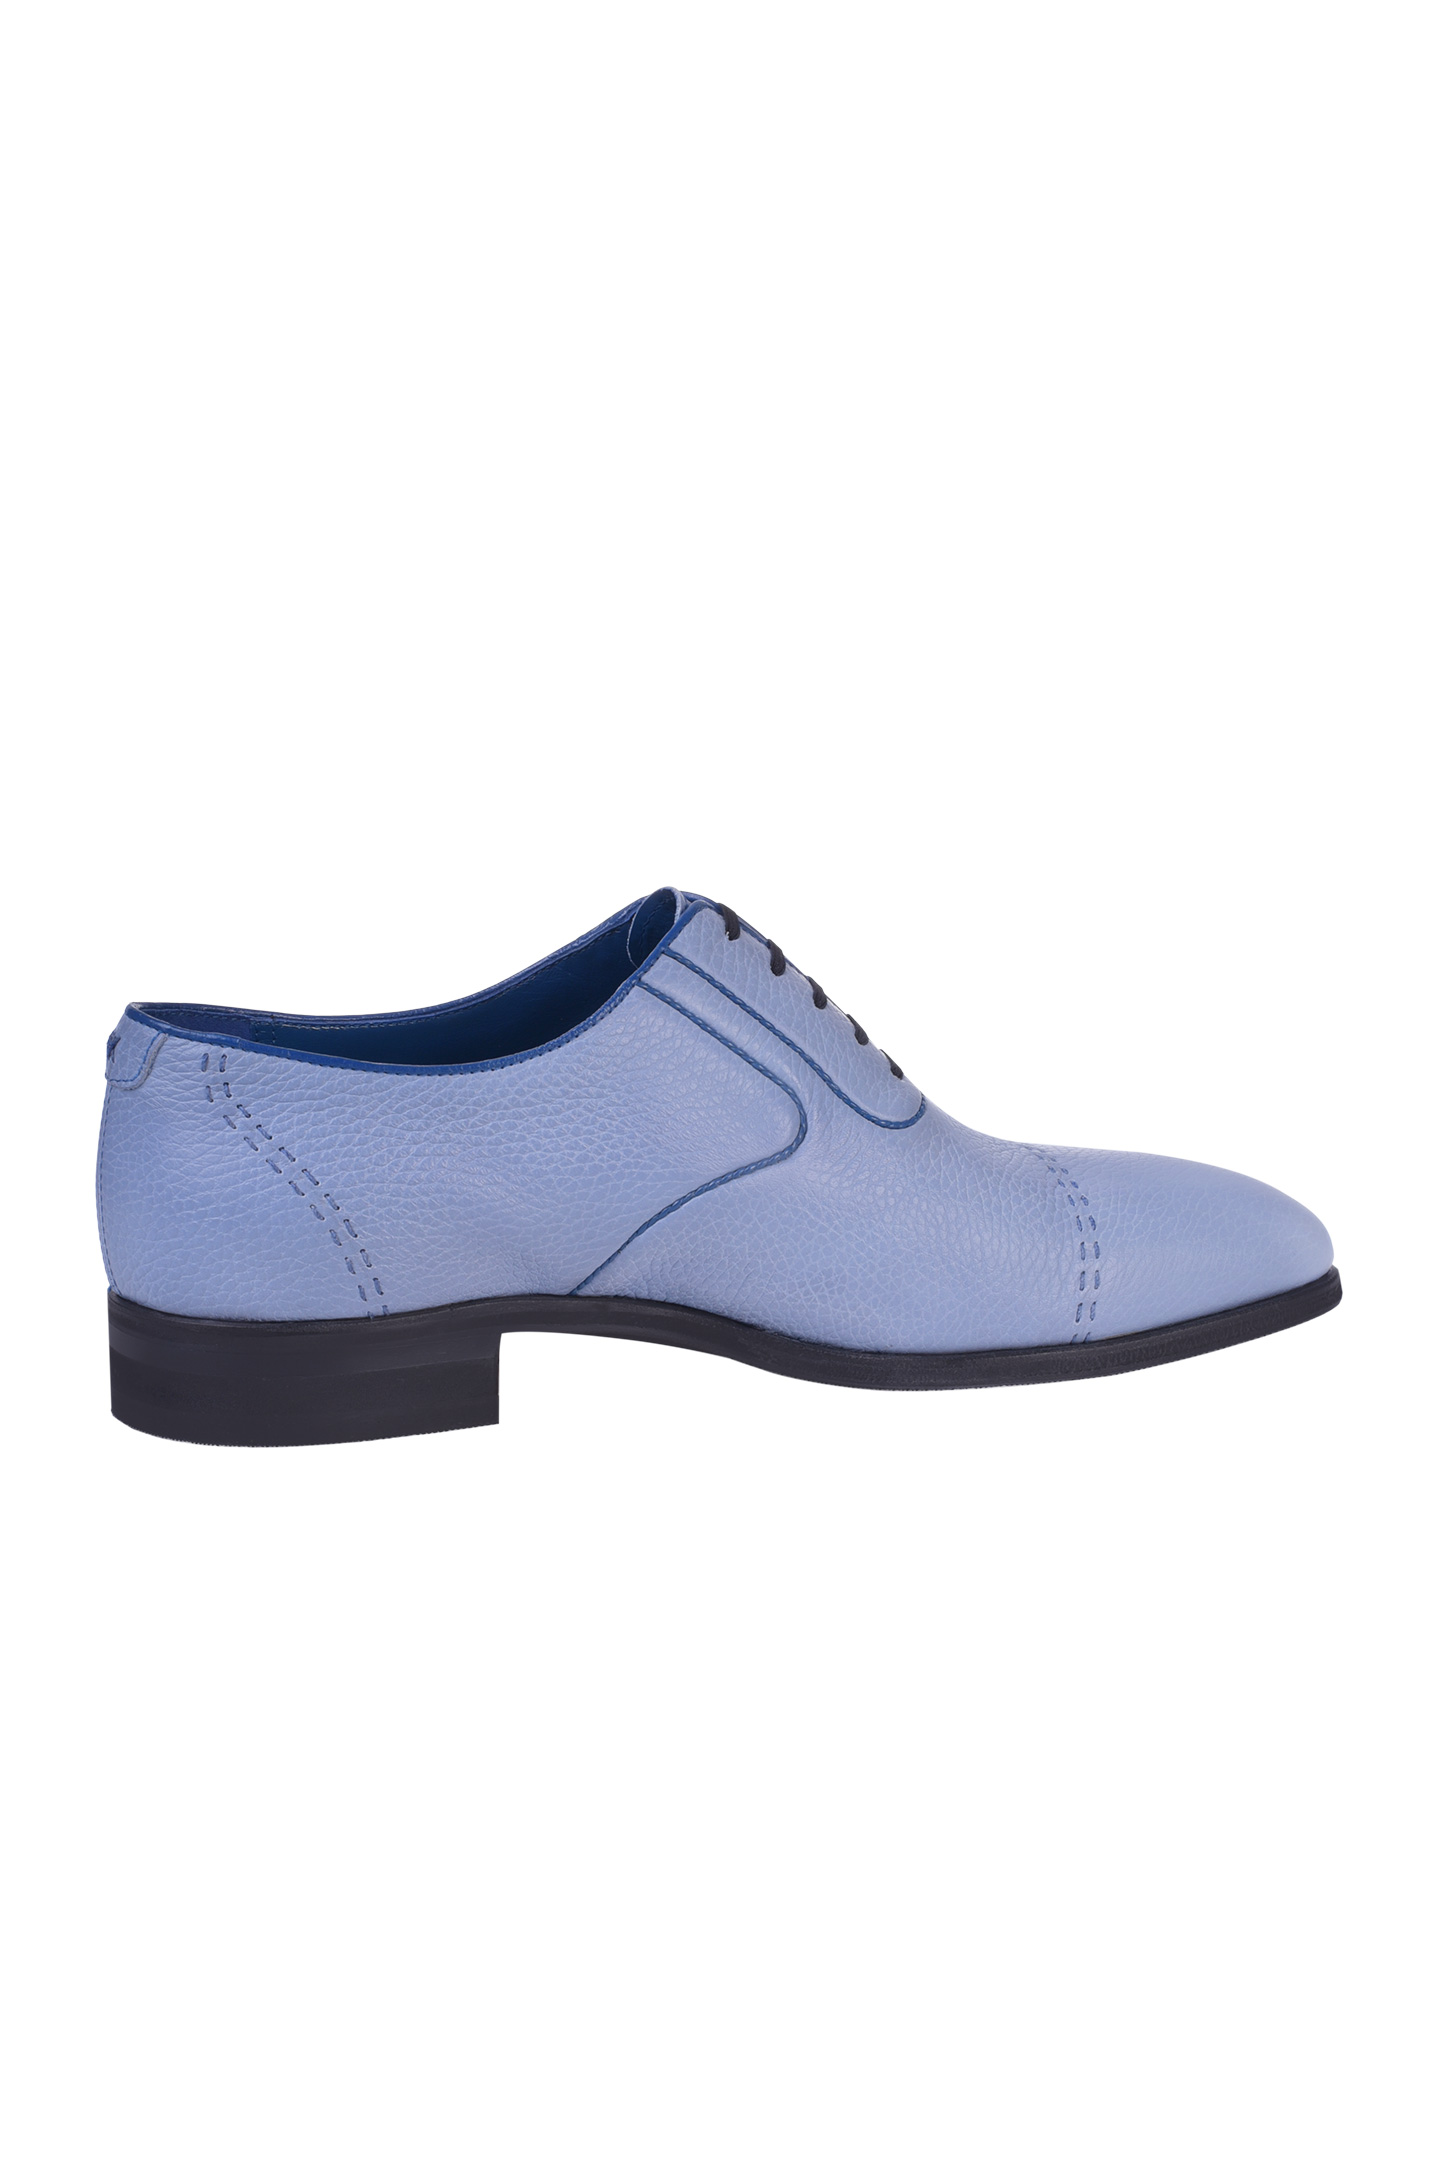 Туфли ARTIOLI 06R179, цвет: Голубой, Мужской